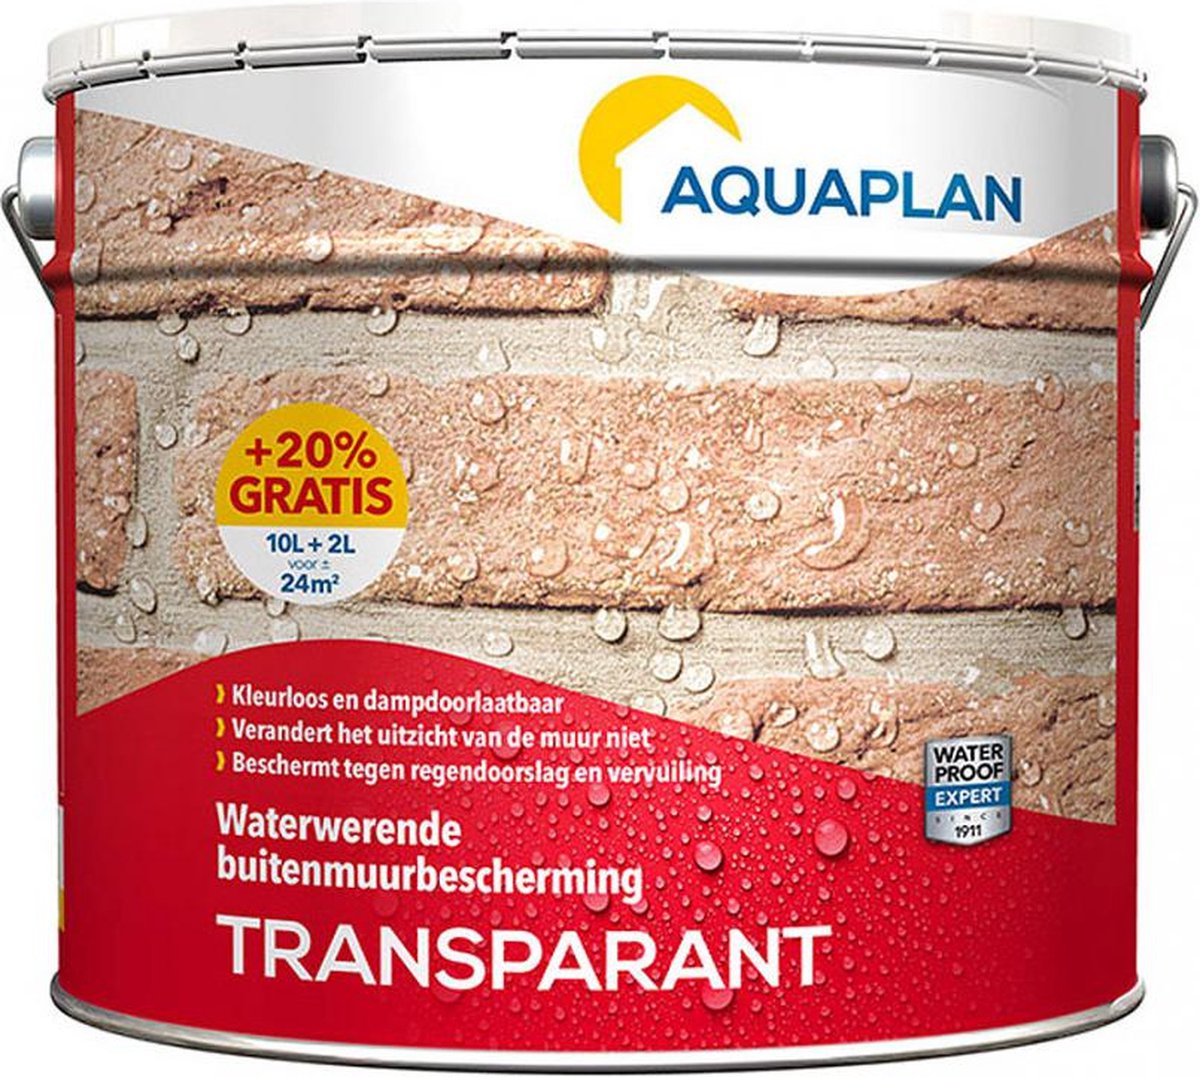 Aquaplan Transparant - Kleurloze bescherming voor niet geschilderde buitenmuren - 10 L + 2 L gratis